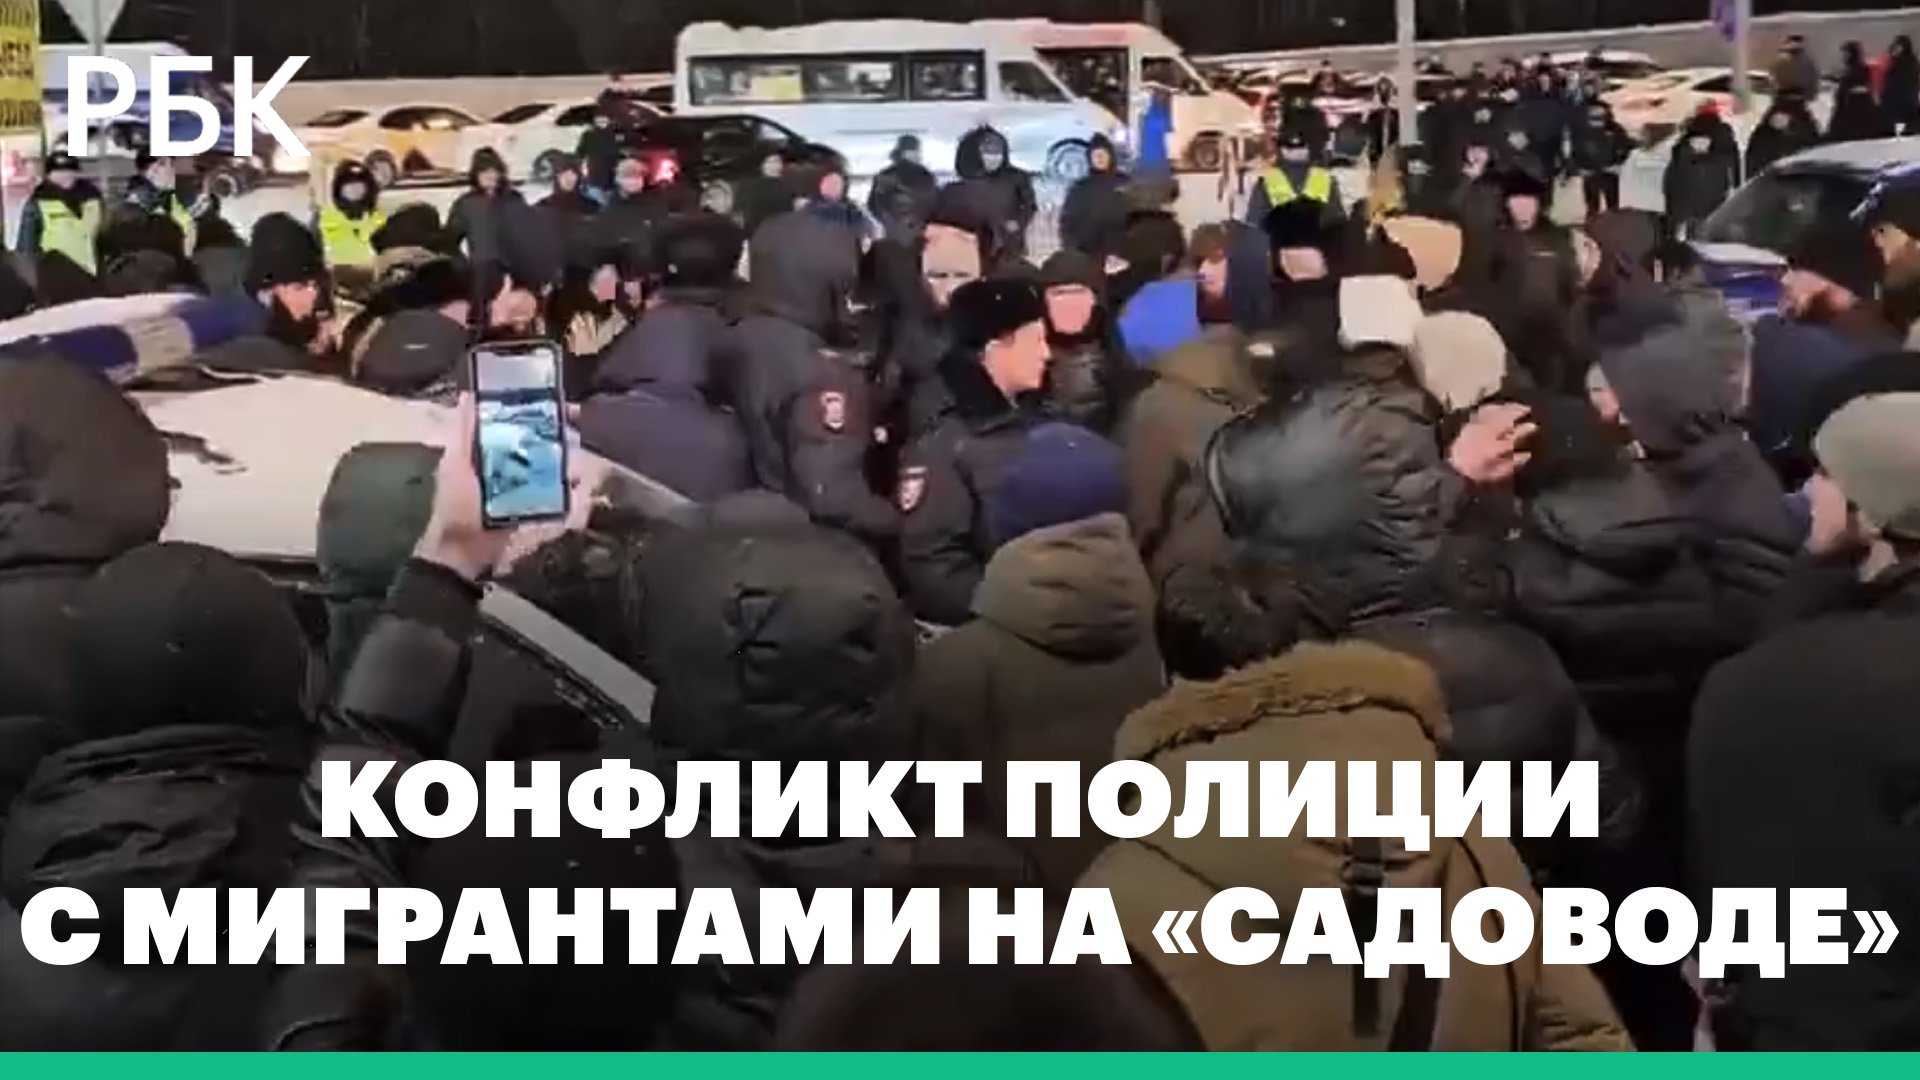 МВД задержало 82 человека после конфликта с полицейскими на Садоводе в Москве